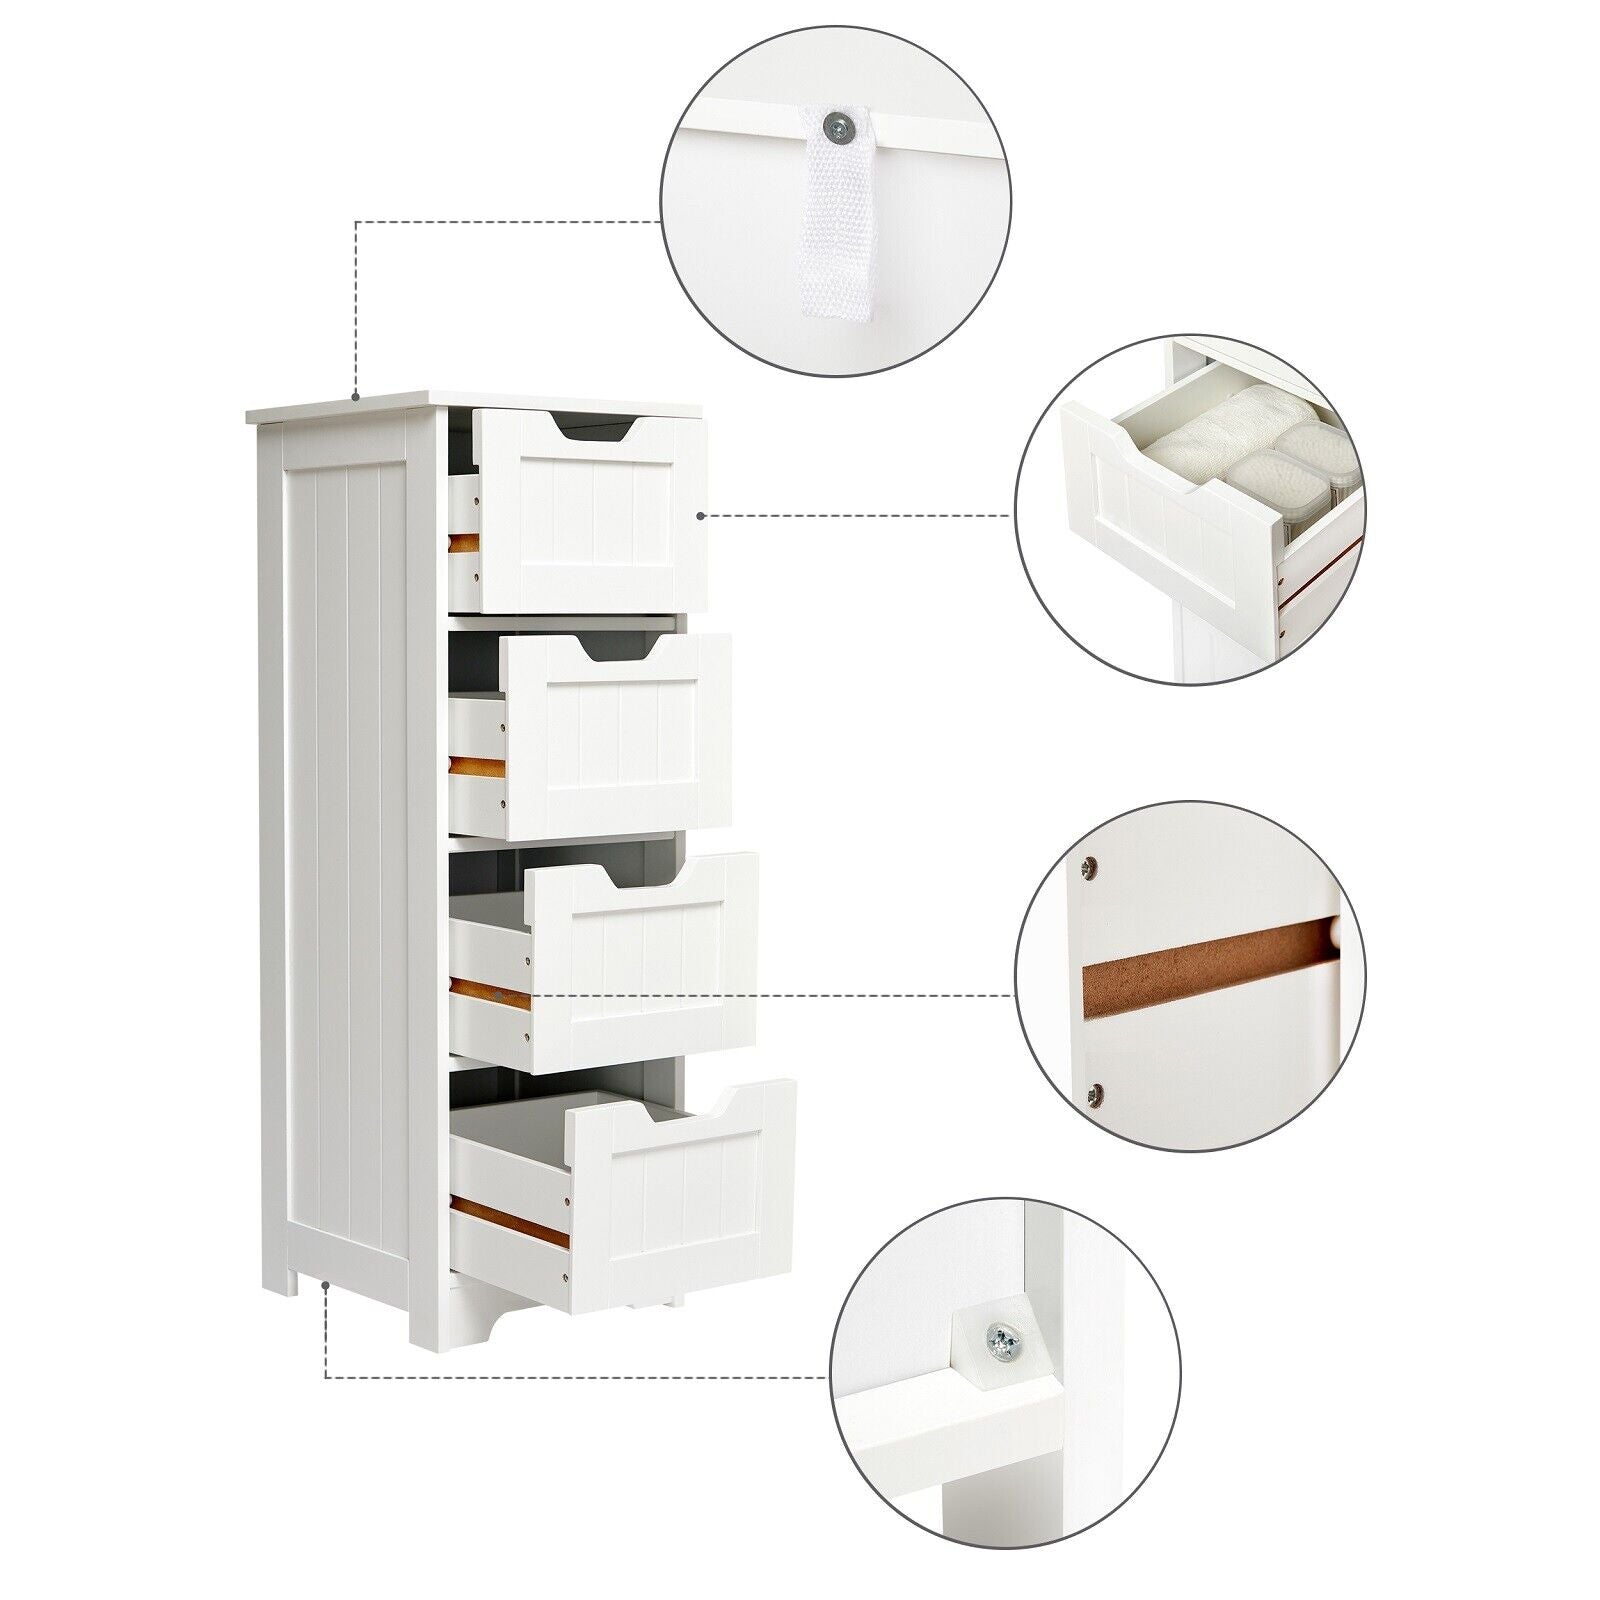 Mondeer 4 Drawers Bathroom Cabinet Wooden Chest Storage Cupboard White Quildinc